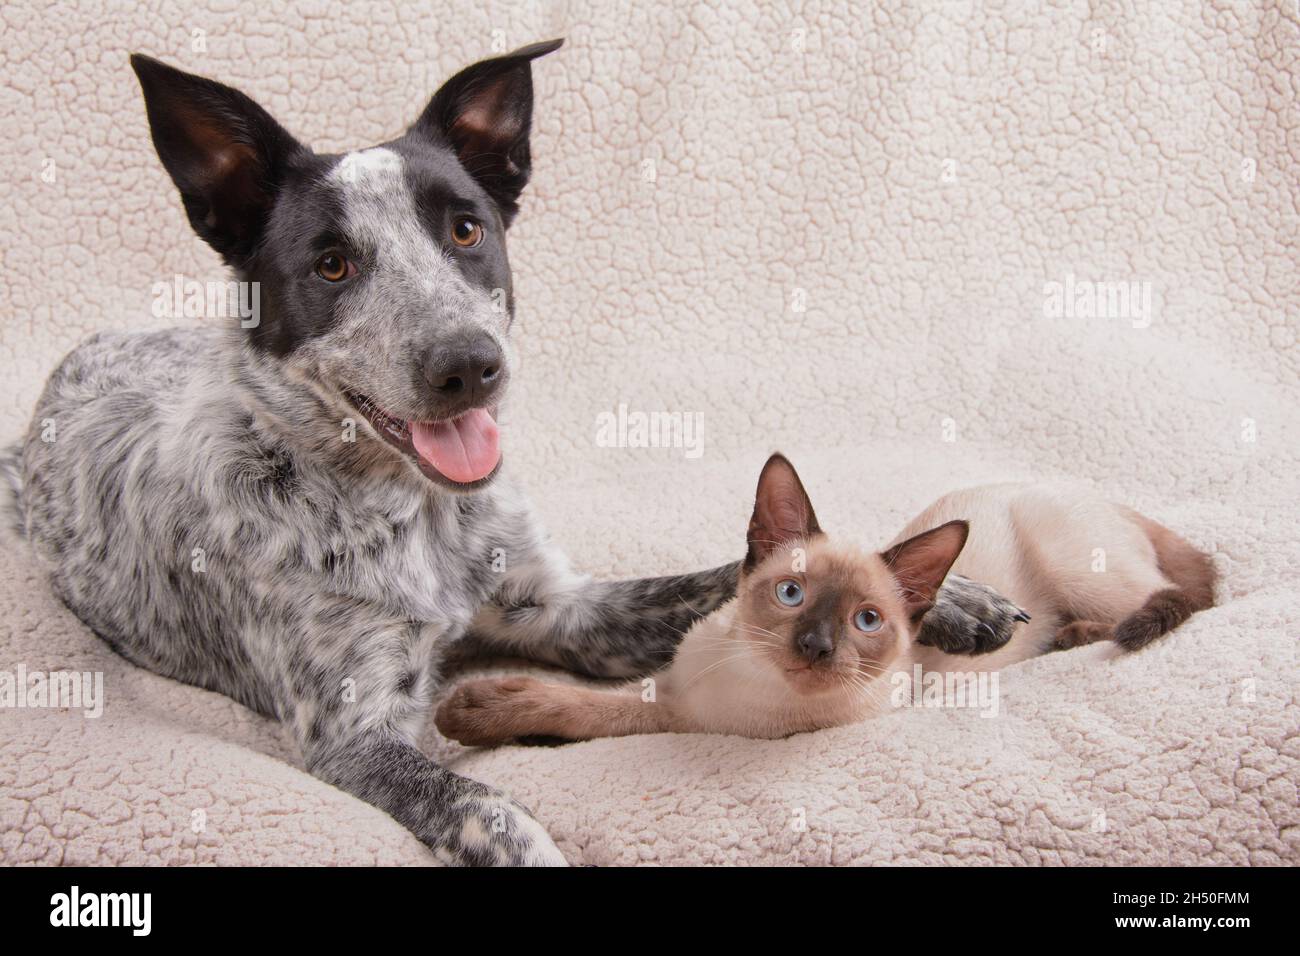 Junger schwarz-weiß gefleckter Hund und eine junge siamesische Katze, die auf einer Decke ruht Stockfoto